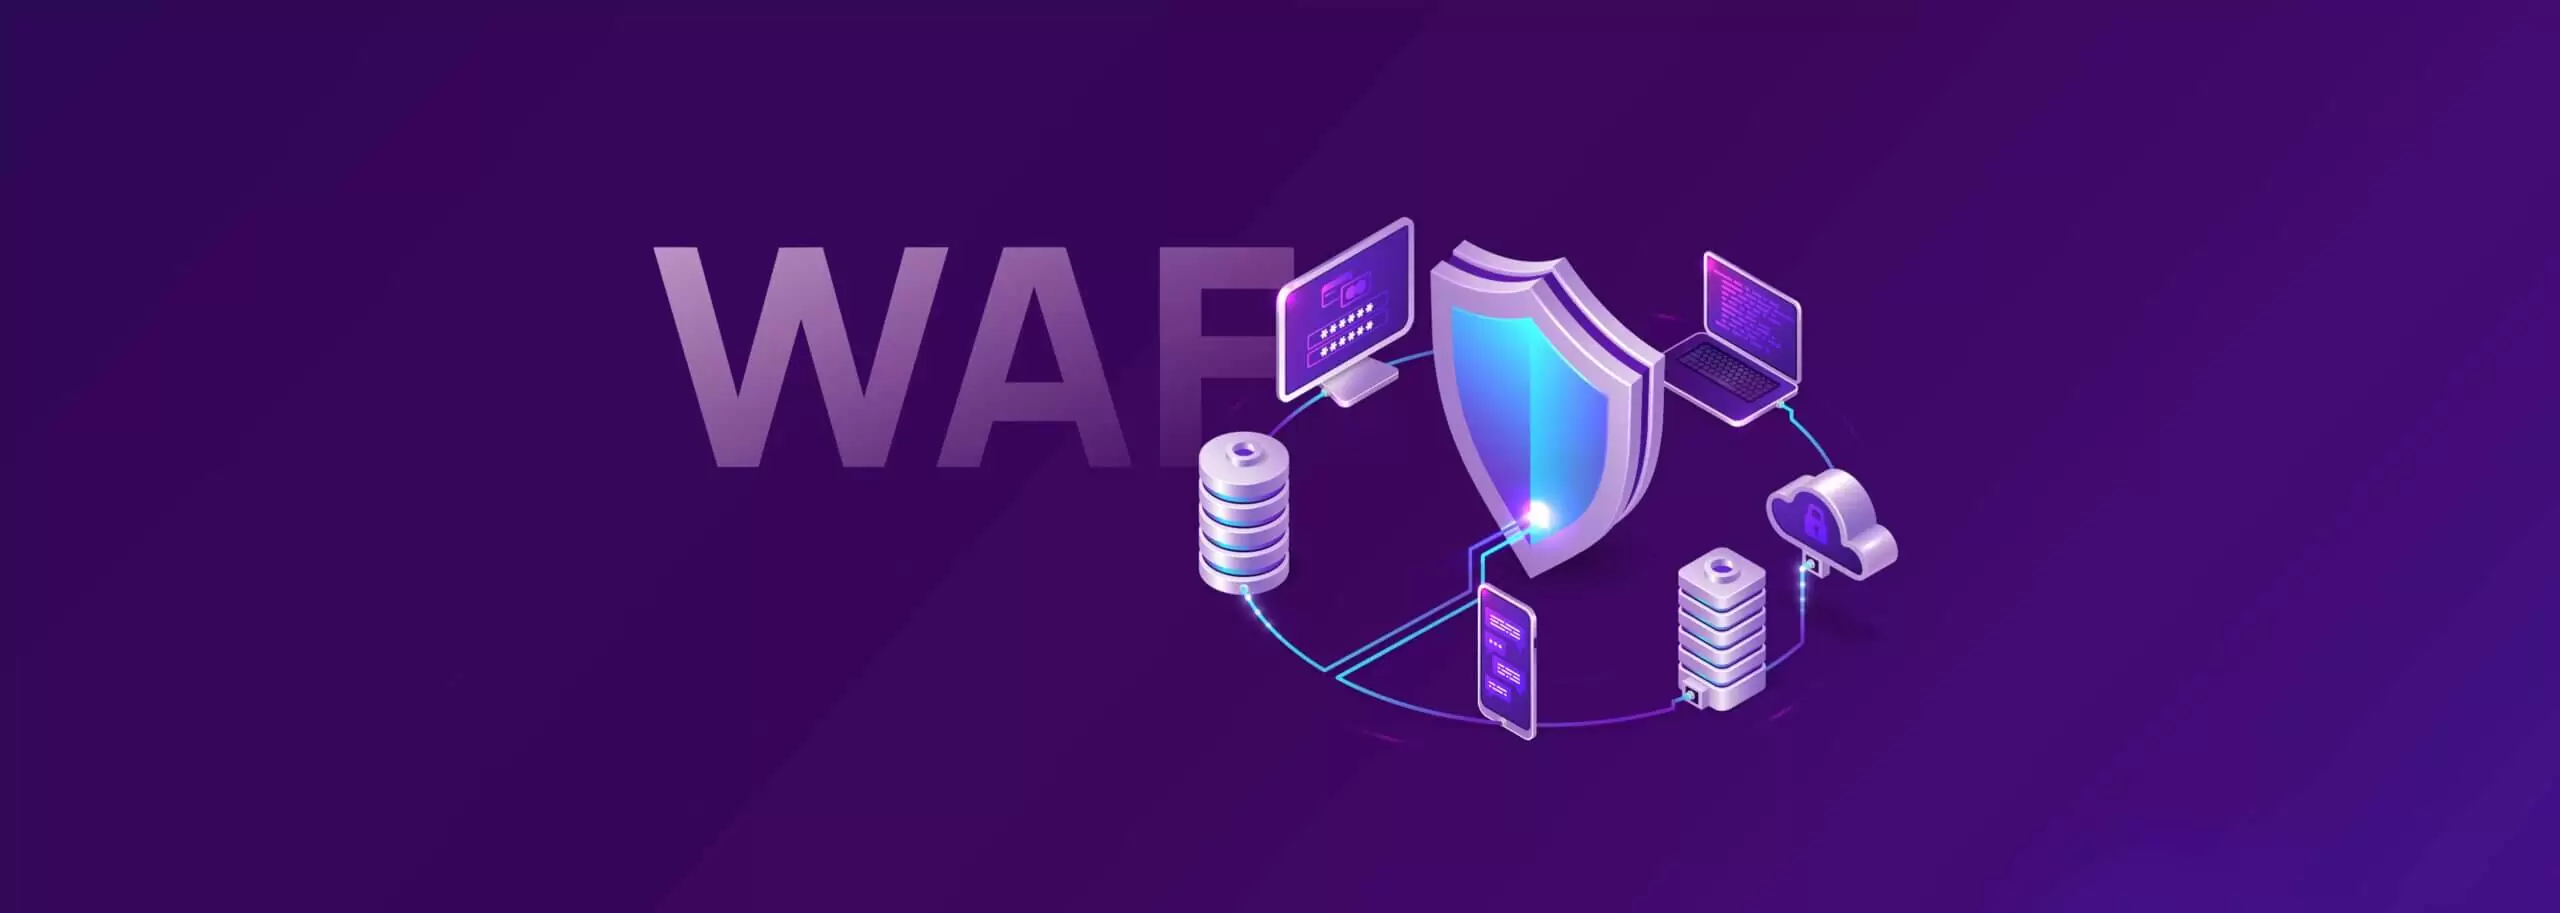 Illustration zur Darstellung von WAF als Teil von Cybersecurity